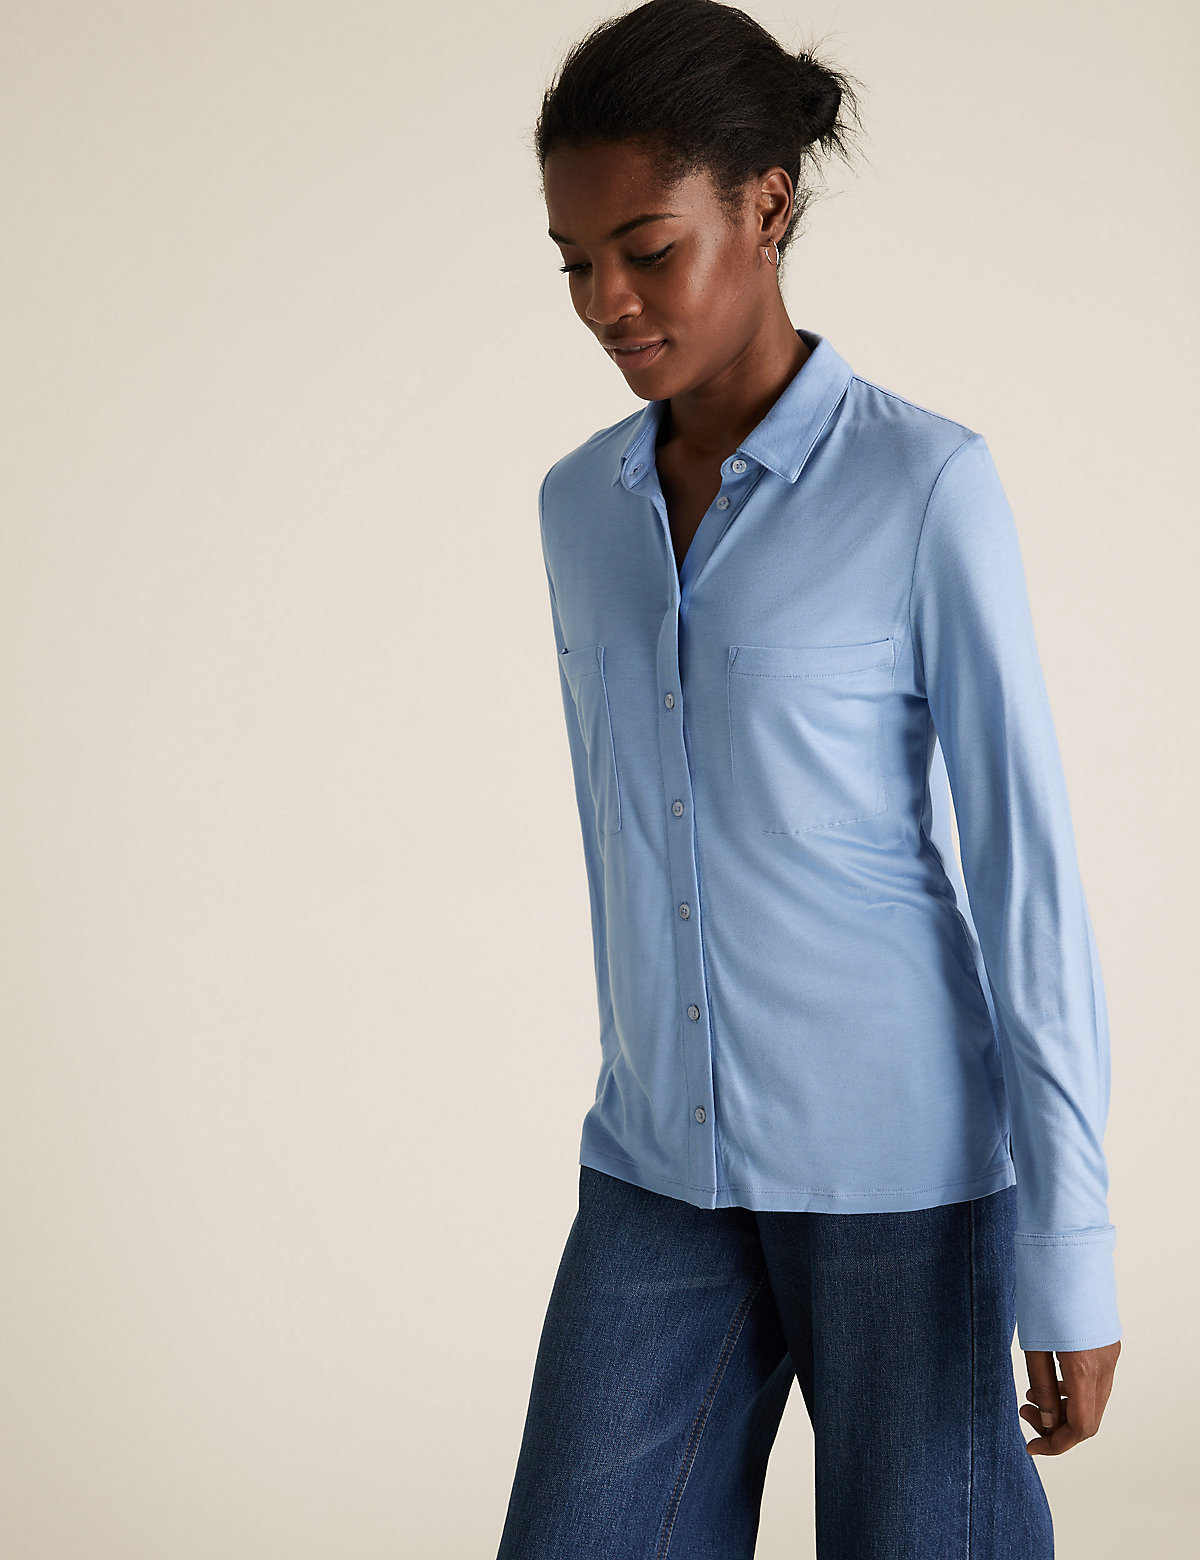 Блуза Marks & Spencer Рубашка из джерси стандартного кроя с длинным рукавом, Marks&Spencer